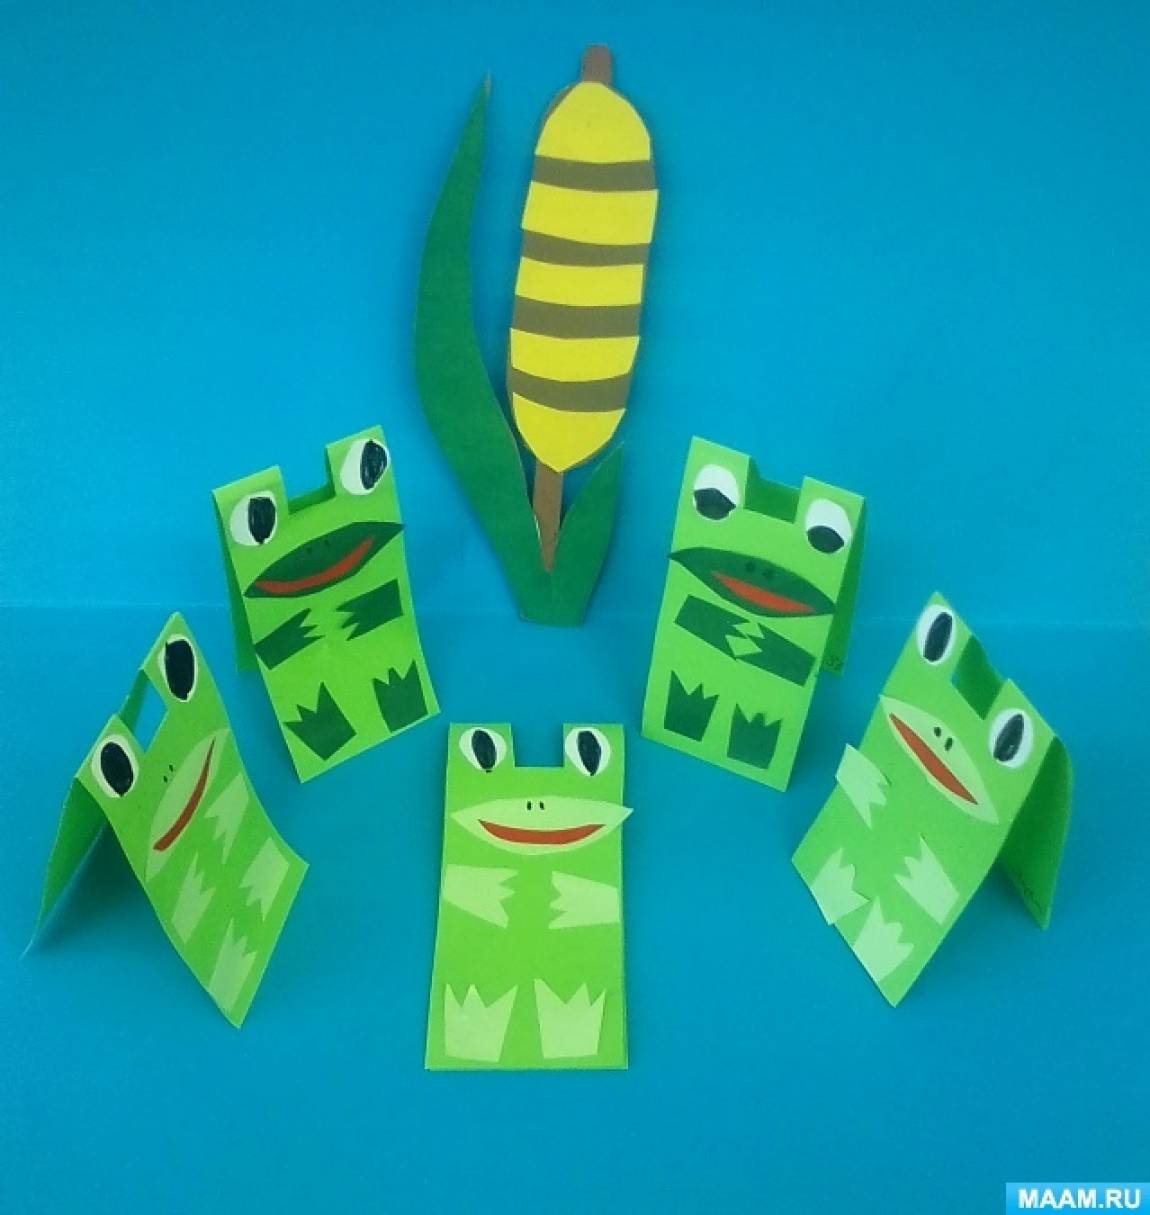 Конспект НОД по конструированию из бумаги «Лягушки» для младшего дошкольного возраста к международному Дню лягушек